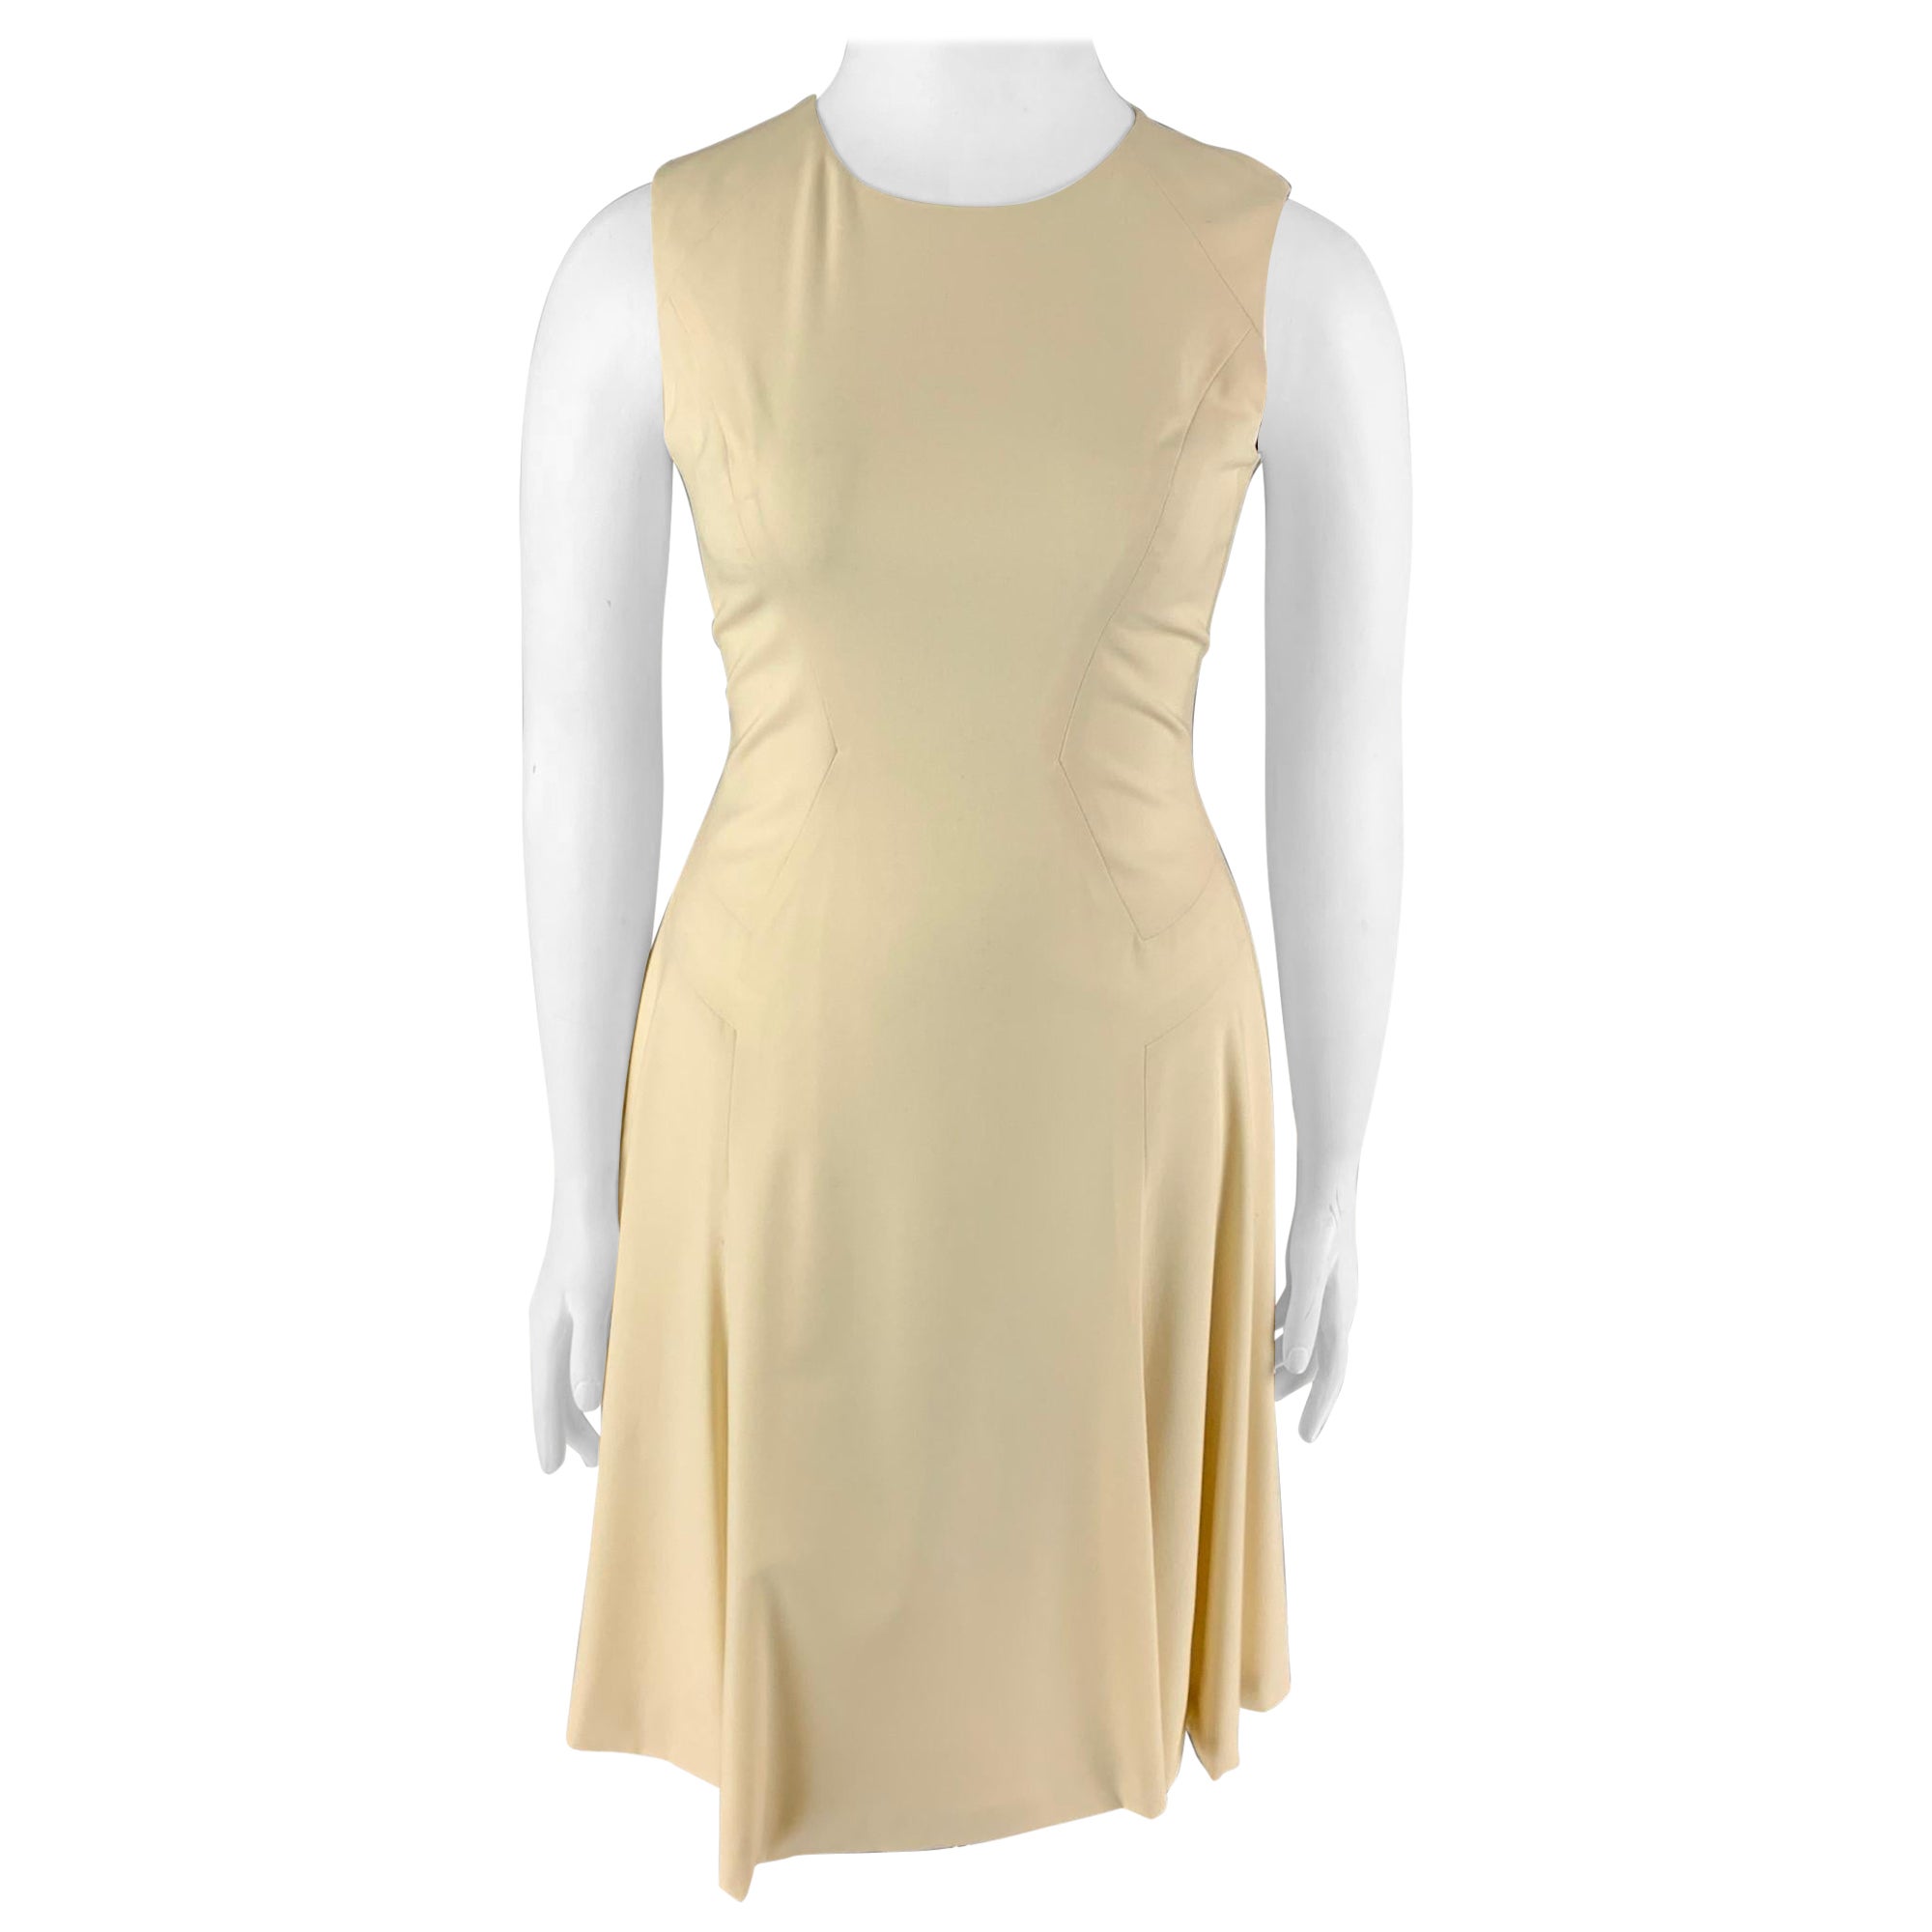 PRABAL GURUNG Size 10 Cream Wool A-Line Dress